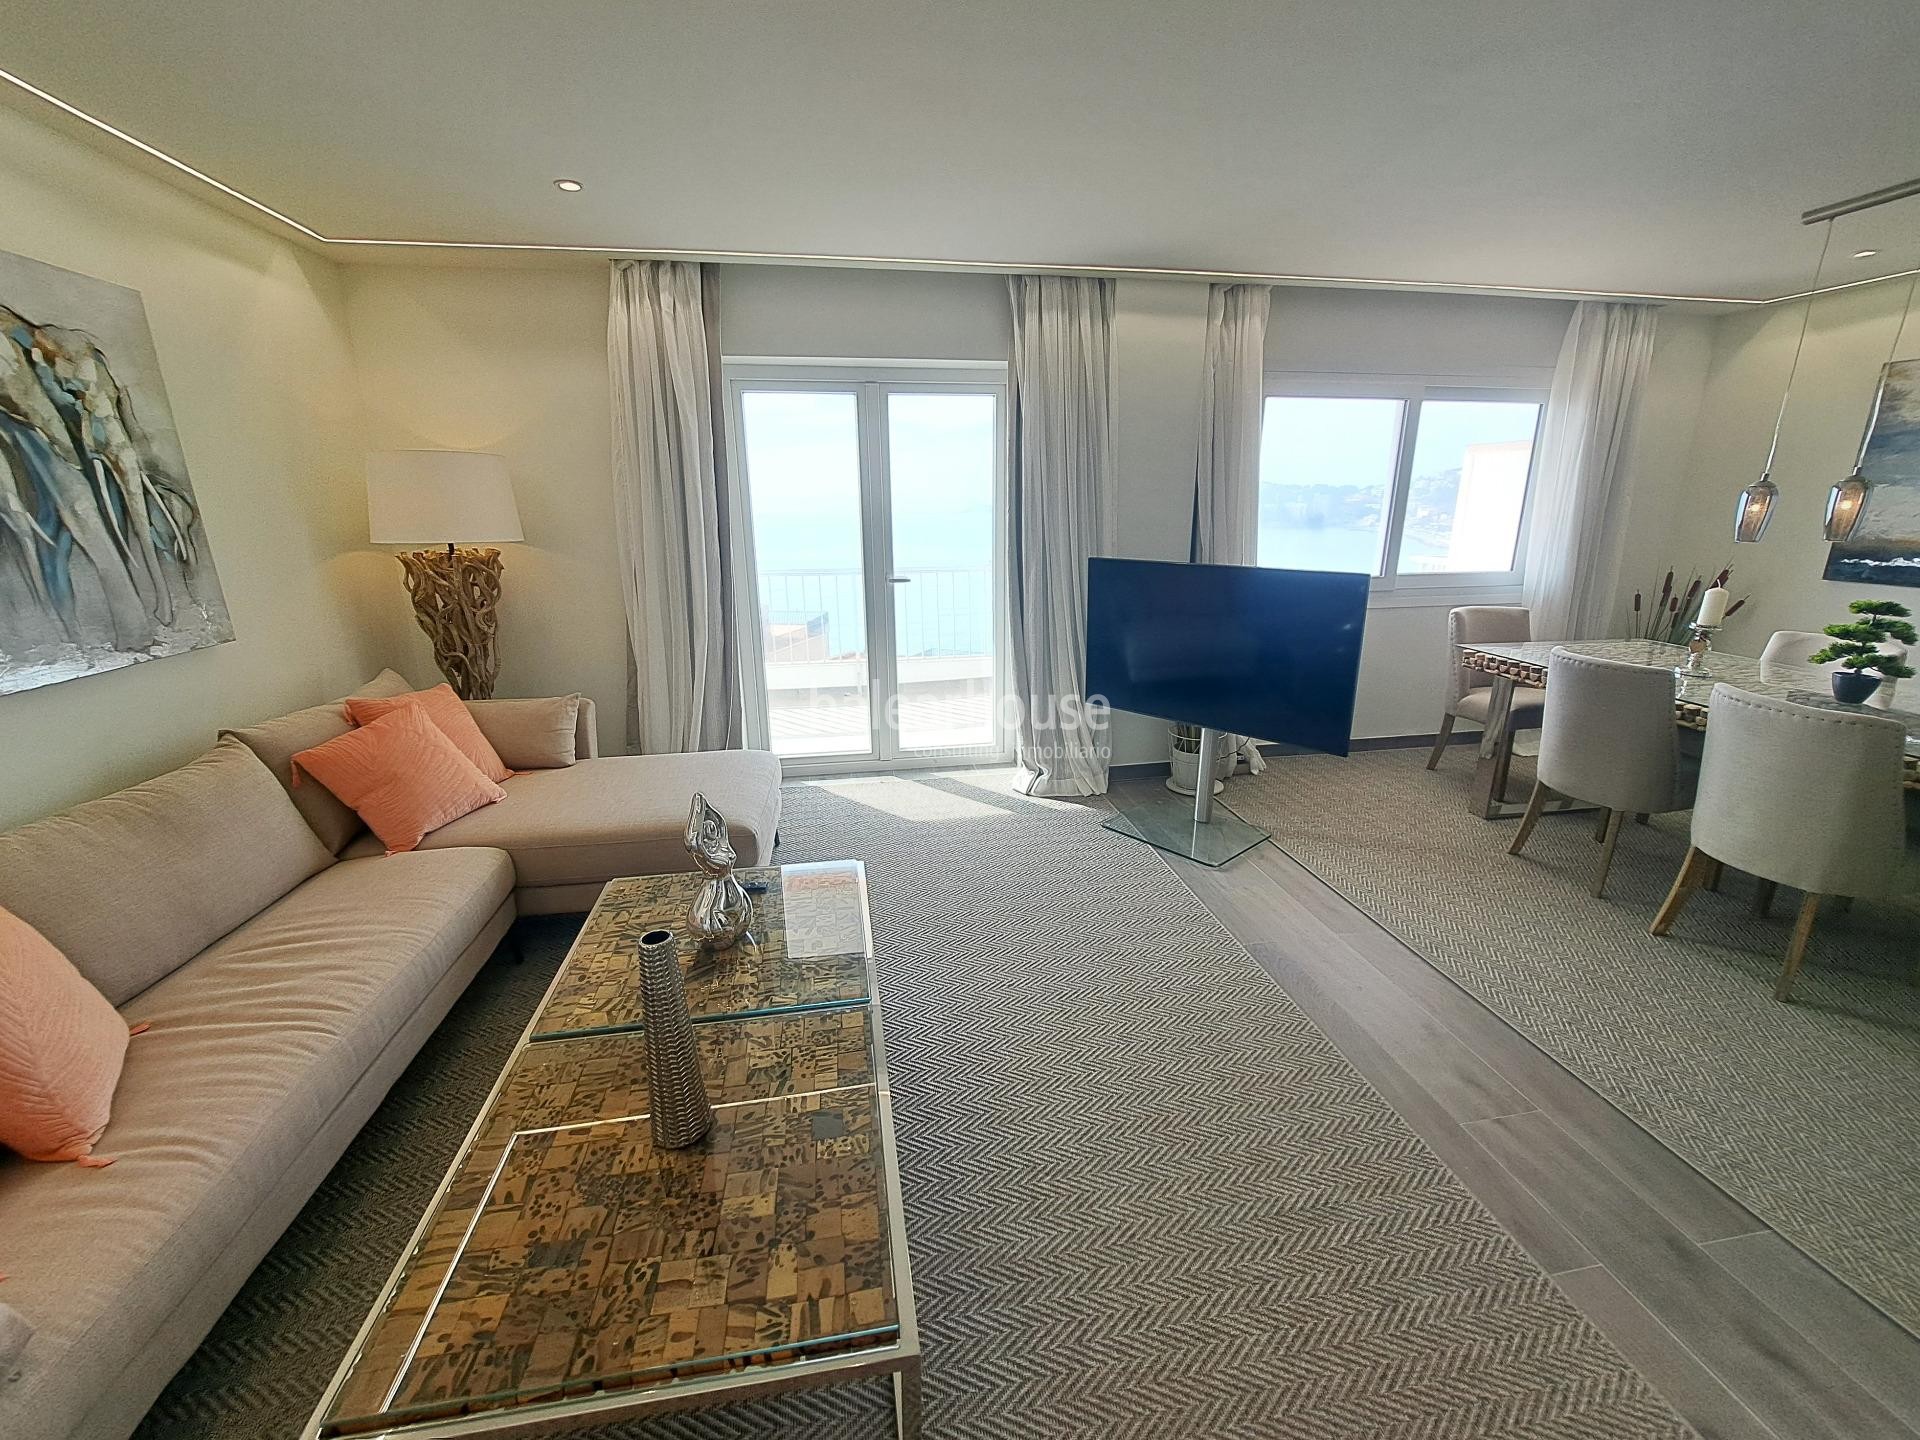 Apartamento reformado con amplia terraza y vistas espectaculares al mar a pocos pasos de la playa.